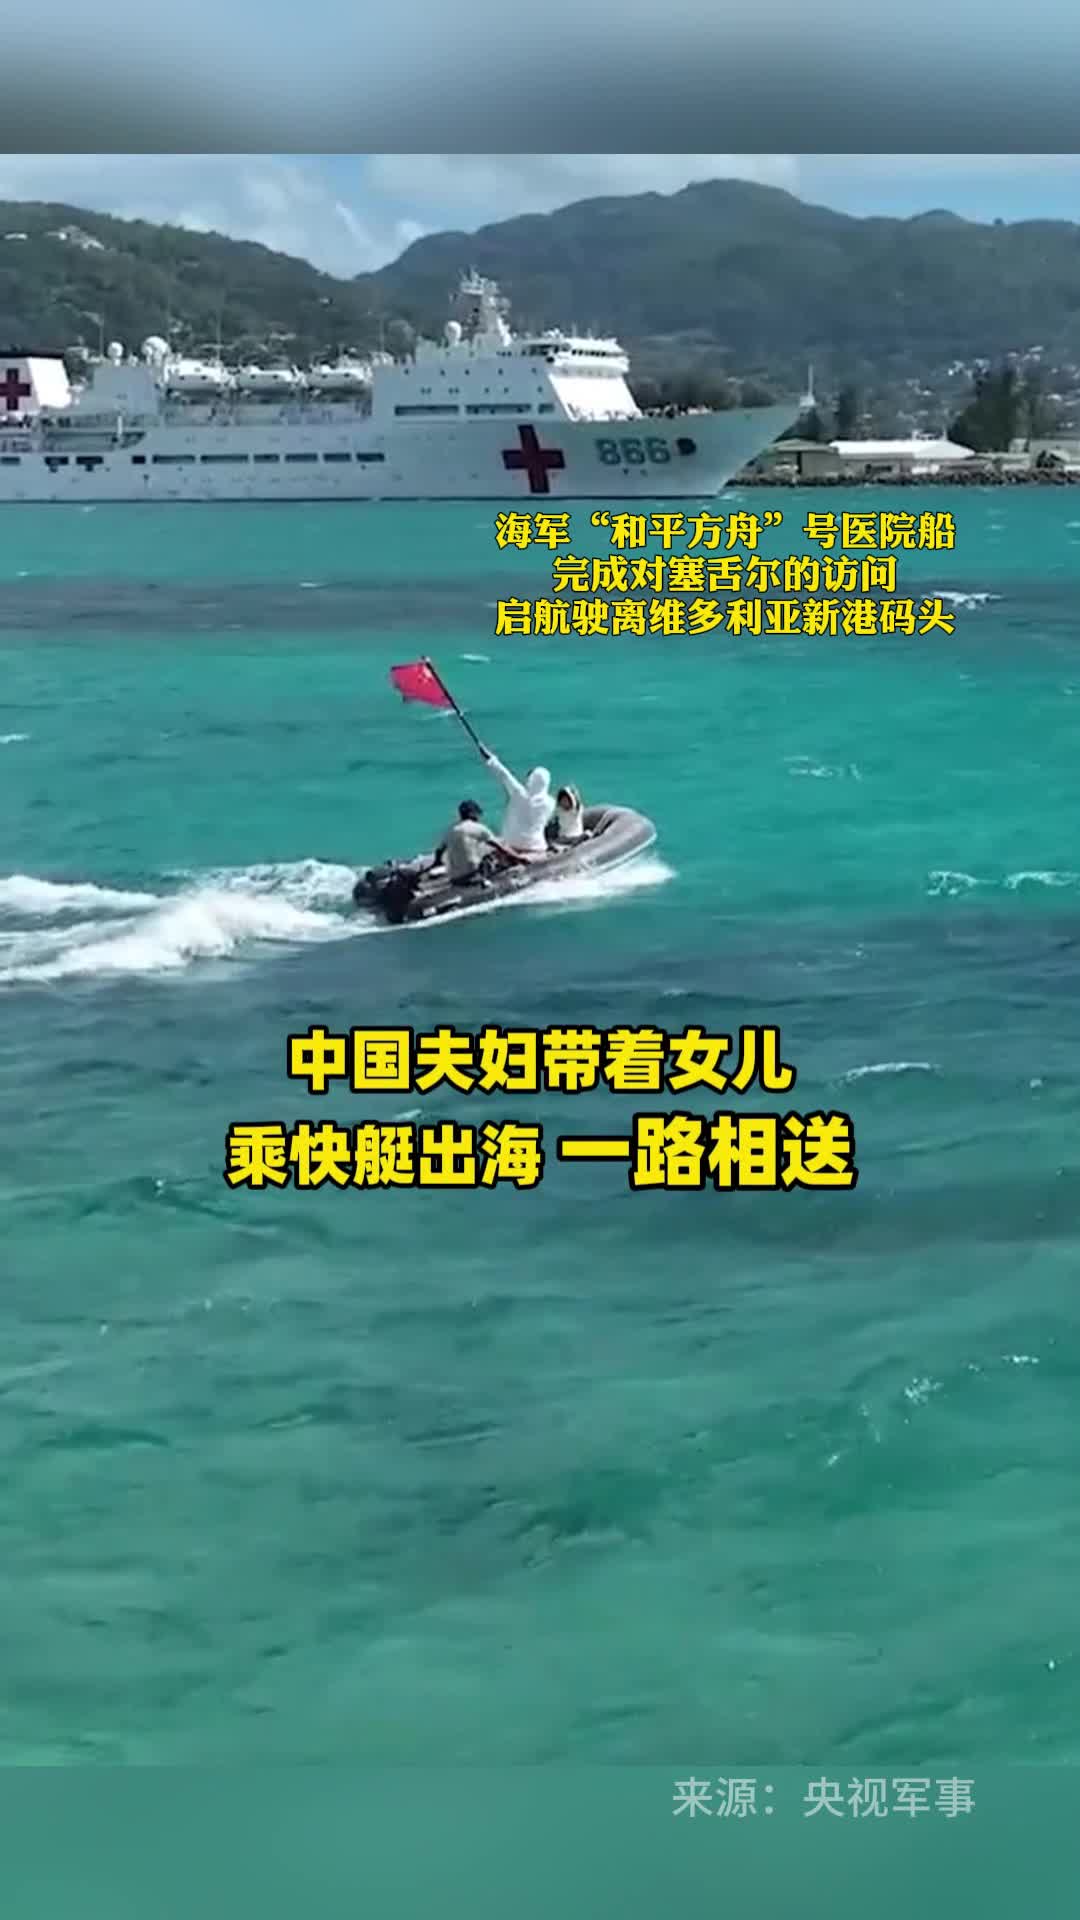 中国夫妇带着女儿举着国旗一路相送海军“和平方舟”号医院船